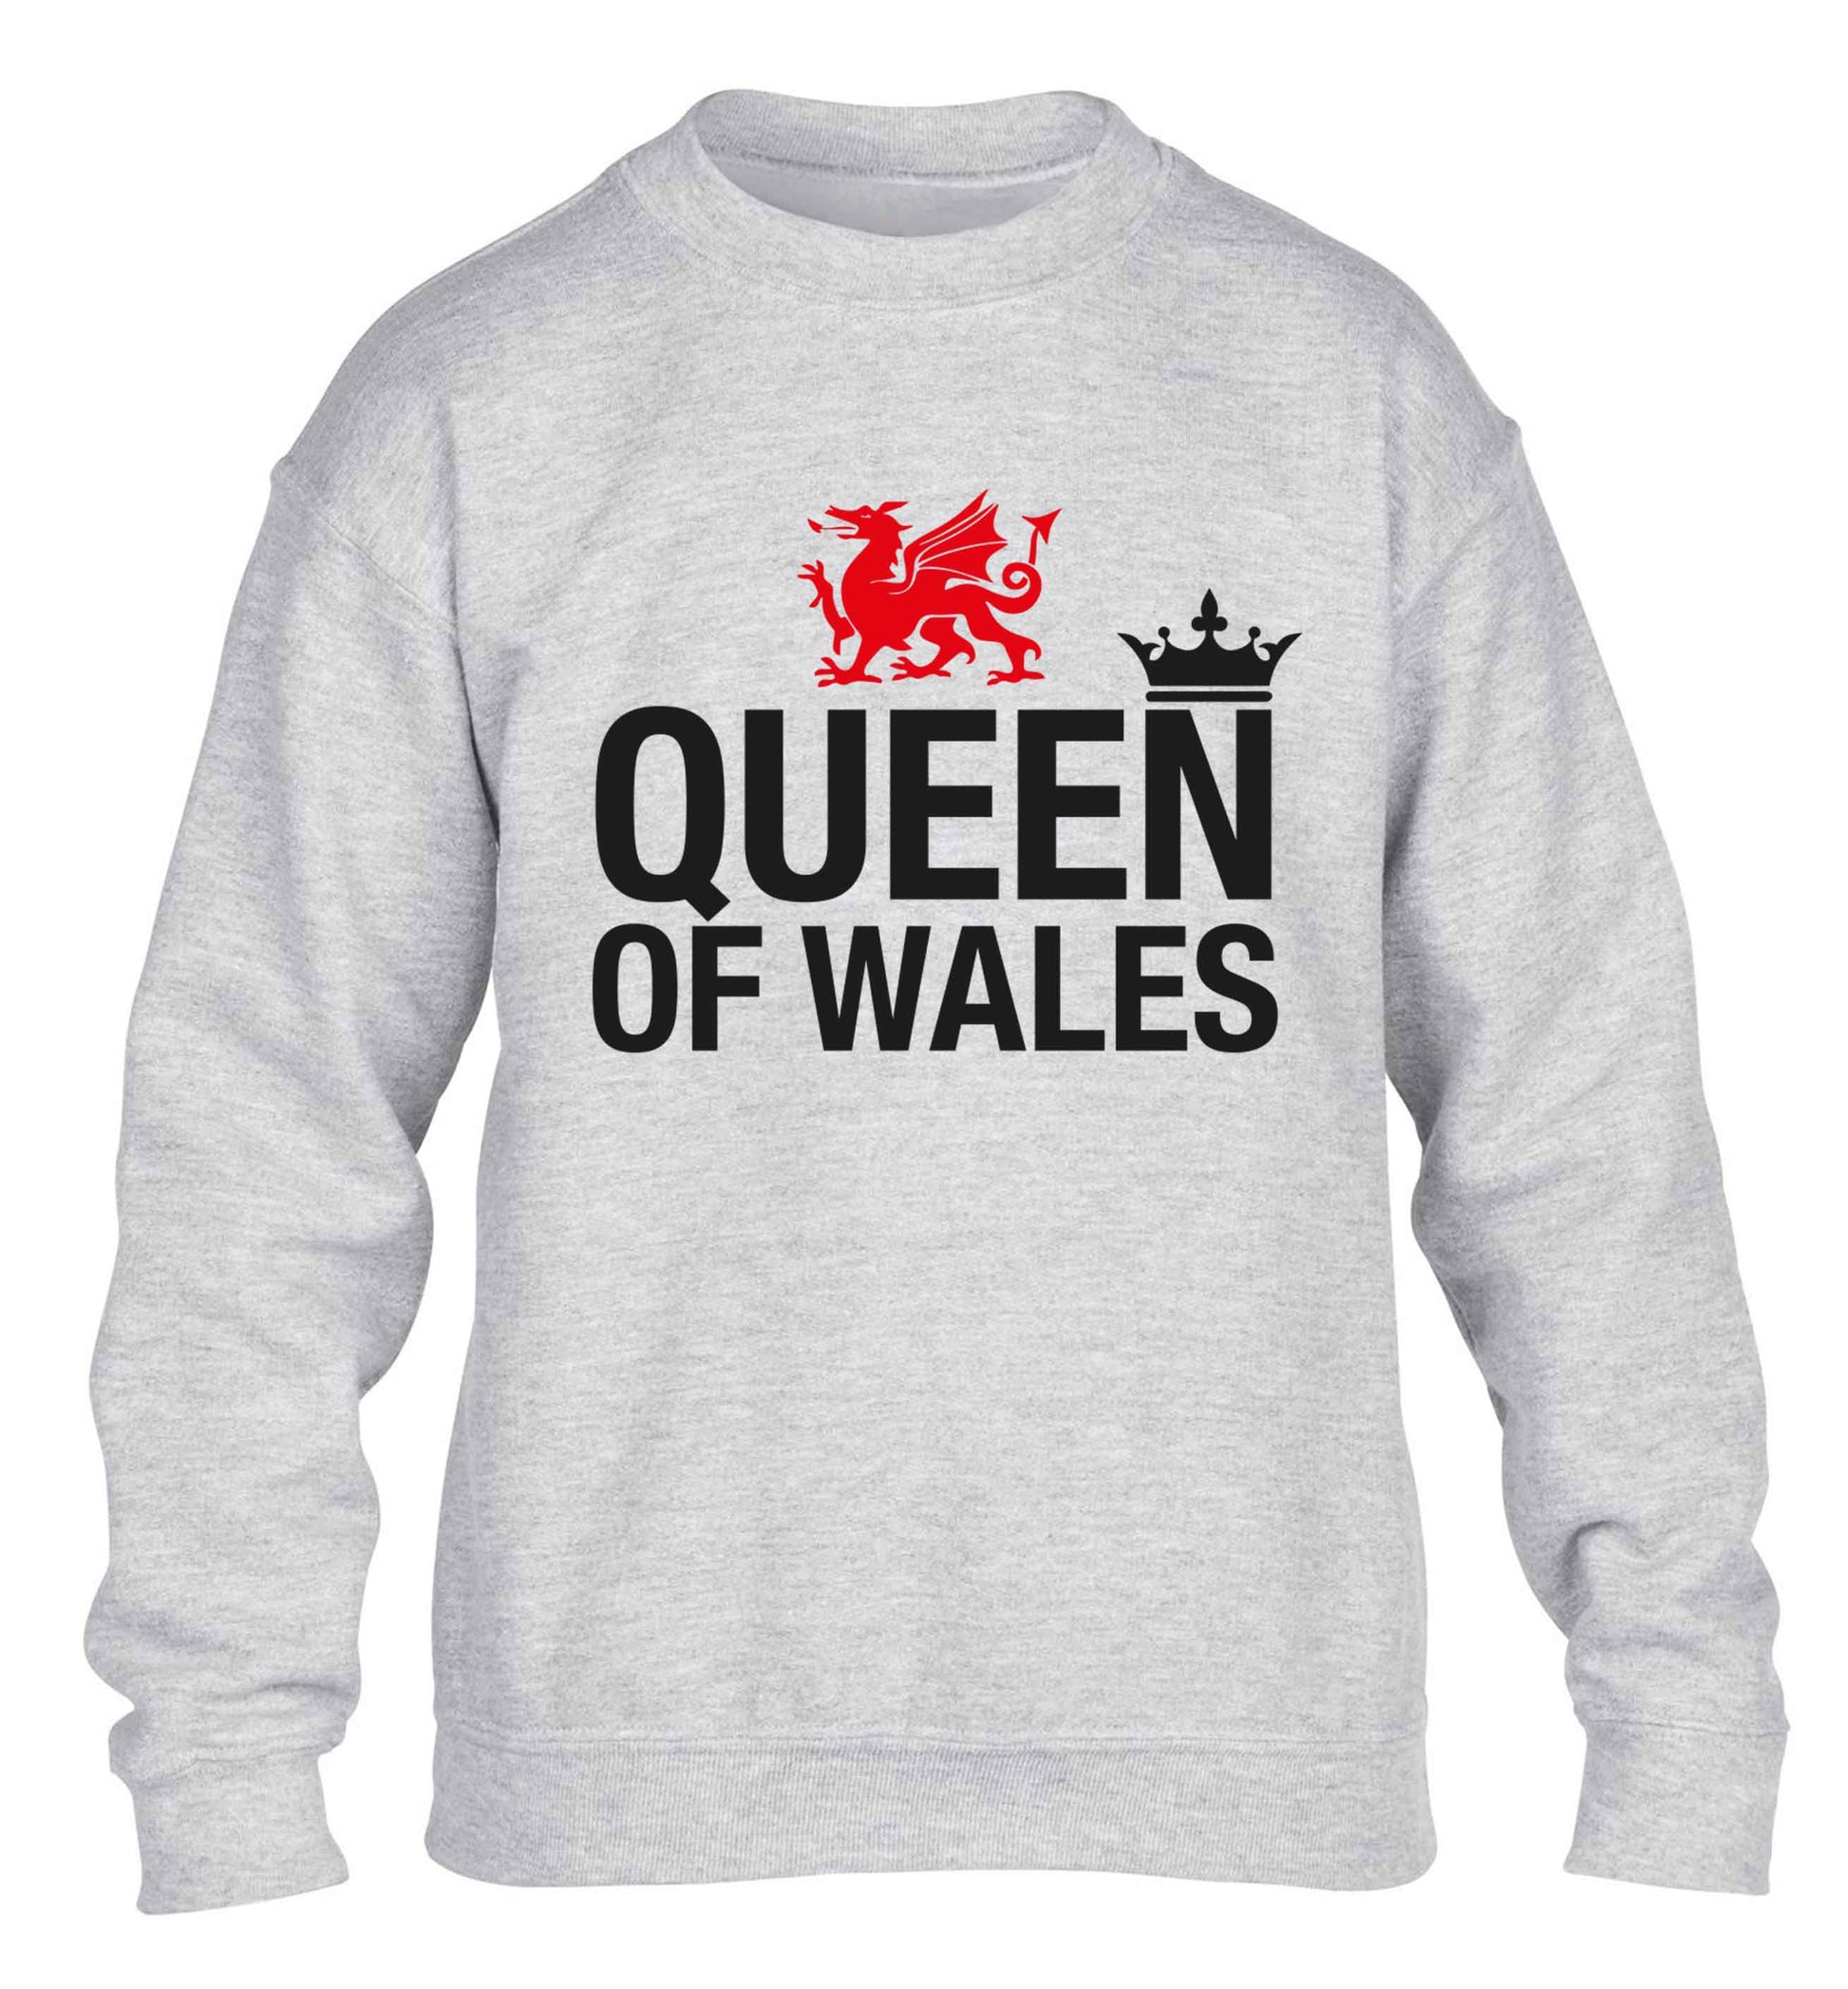 Queen of Wales children's grey sweater 12-13 Years